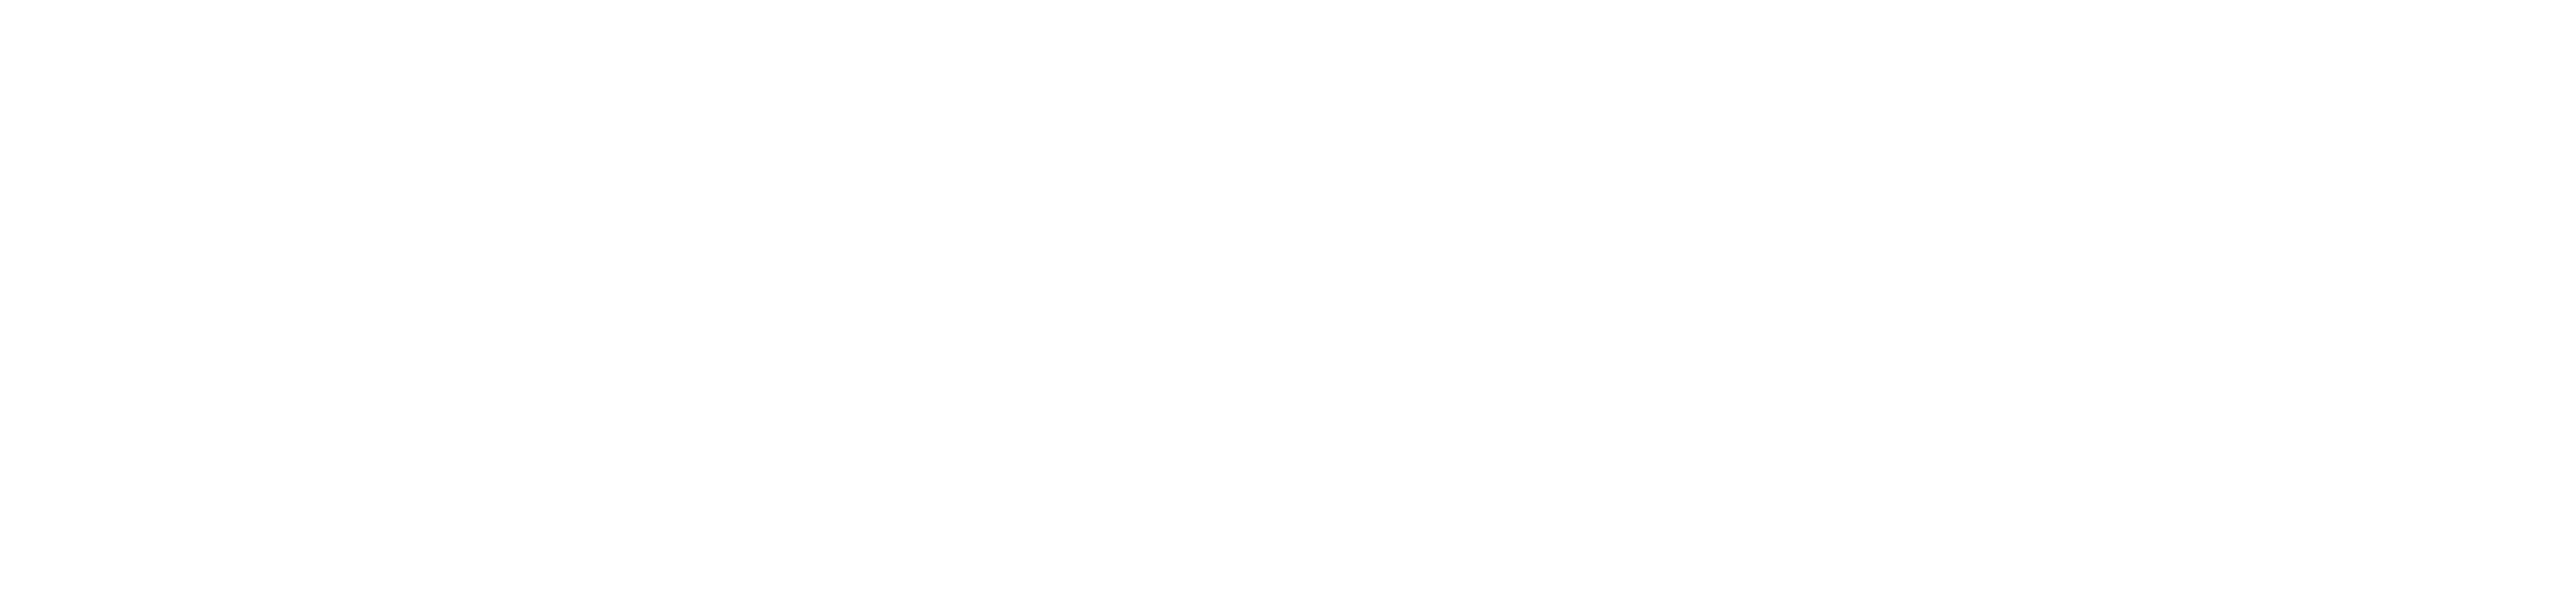 Alphansotechnology